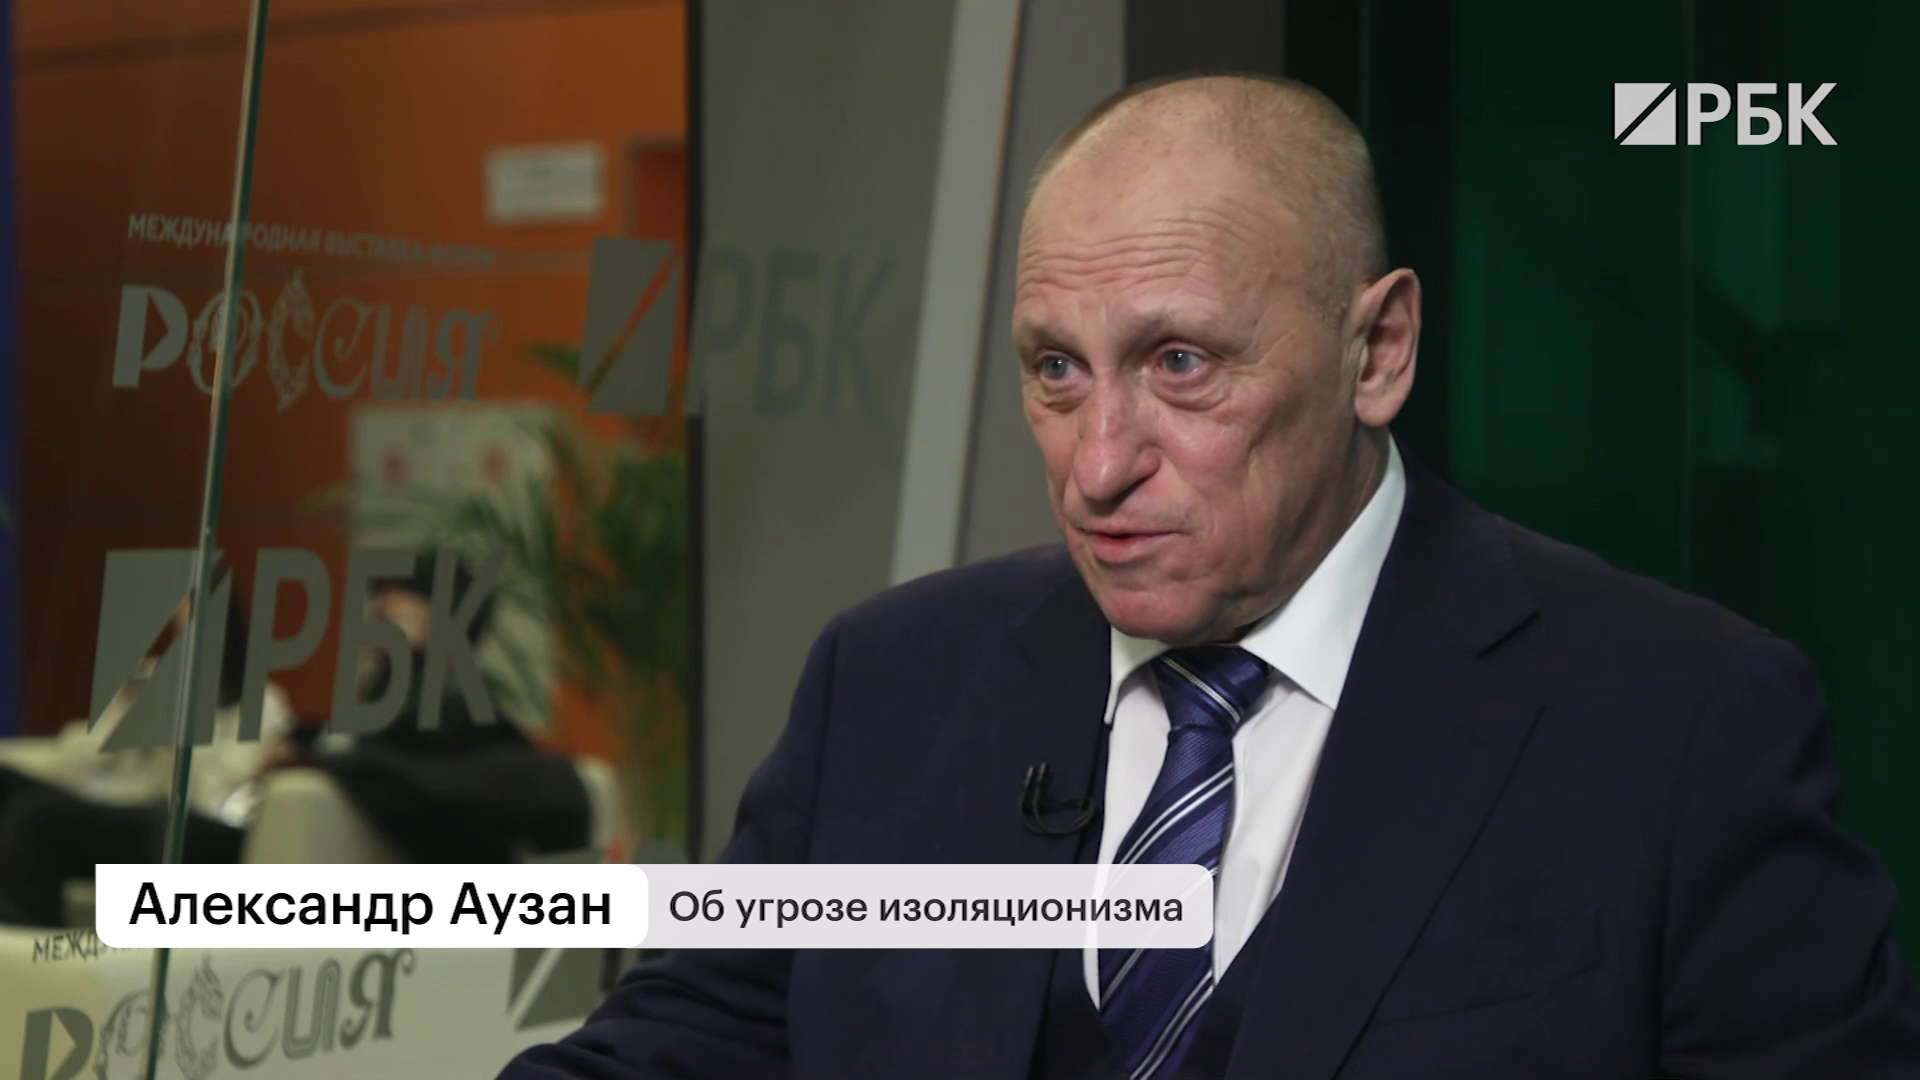 «Путь Левши» у России и ошибки «Слова пацана»: полное интервью Аузана